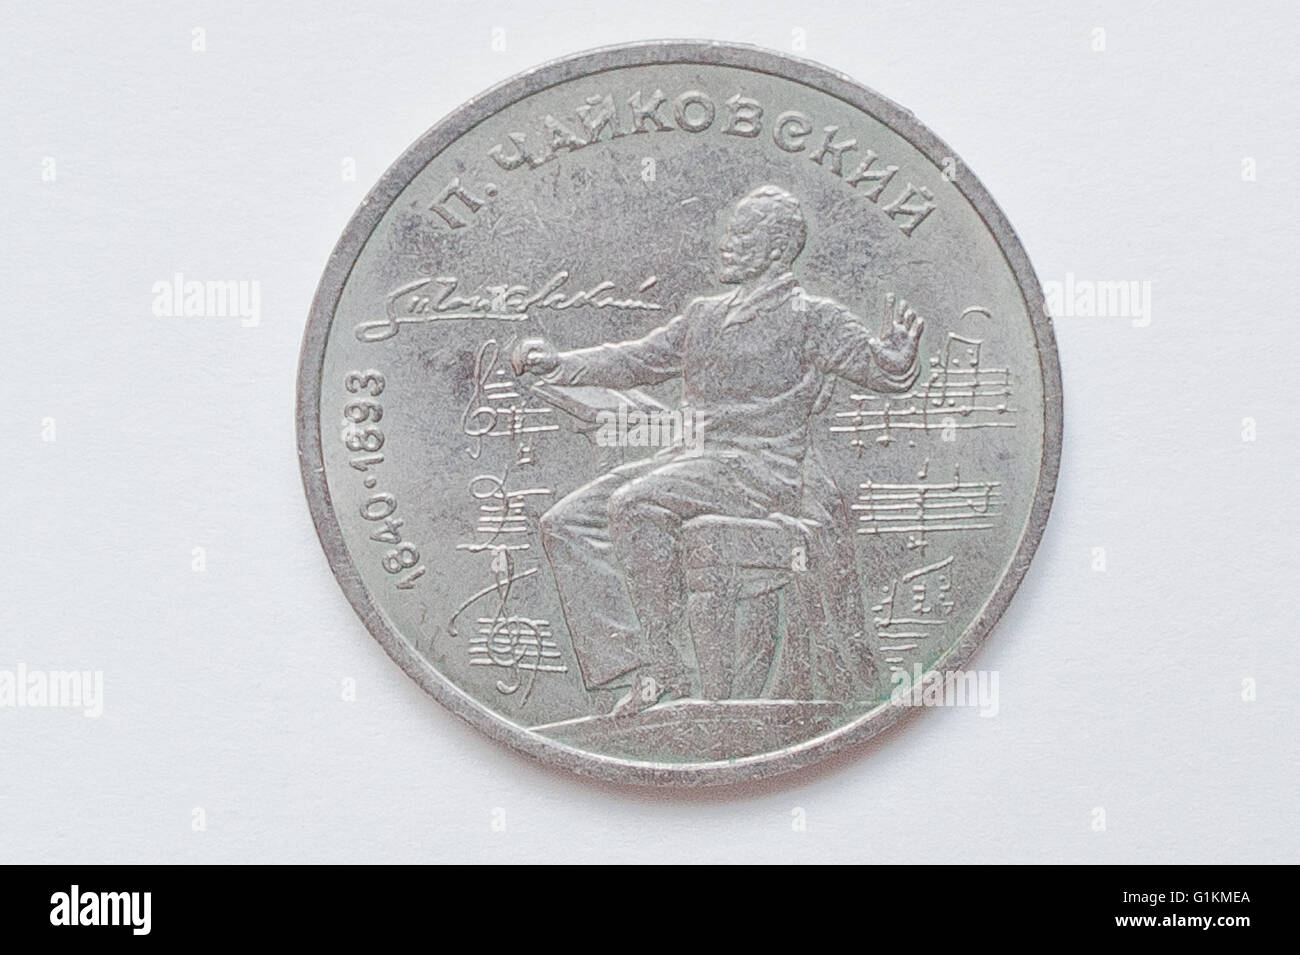 Moneda conmemorativa de 1 rublo URSS desde 1990, muestra Peter Ilich Tchaikovsky, compositor ruso del período romántico tardío (1840-18 Foto de stock